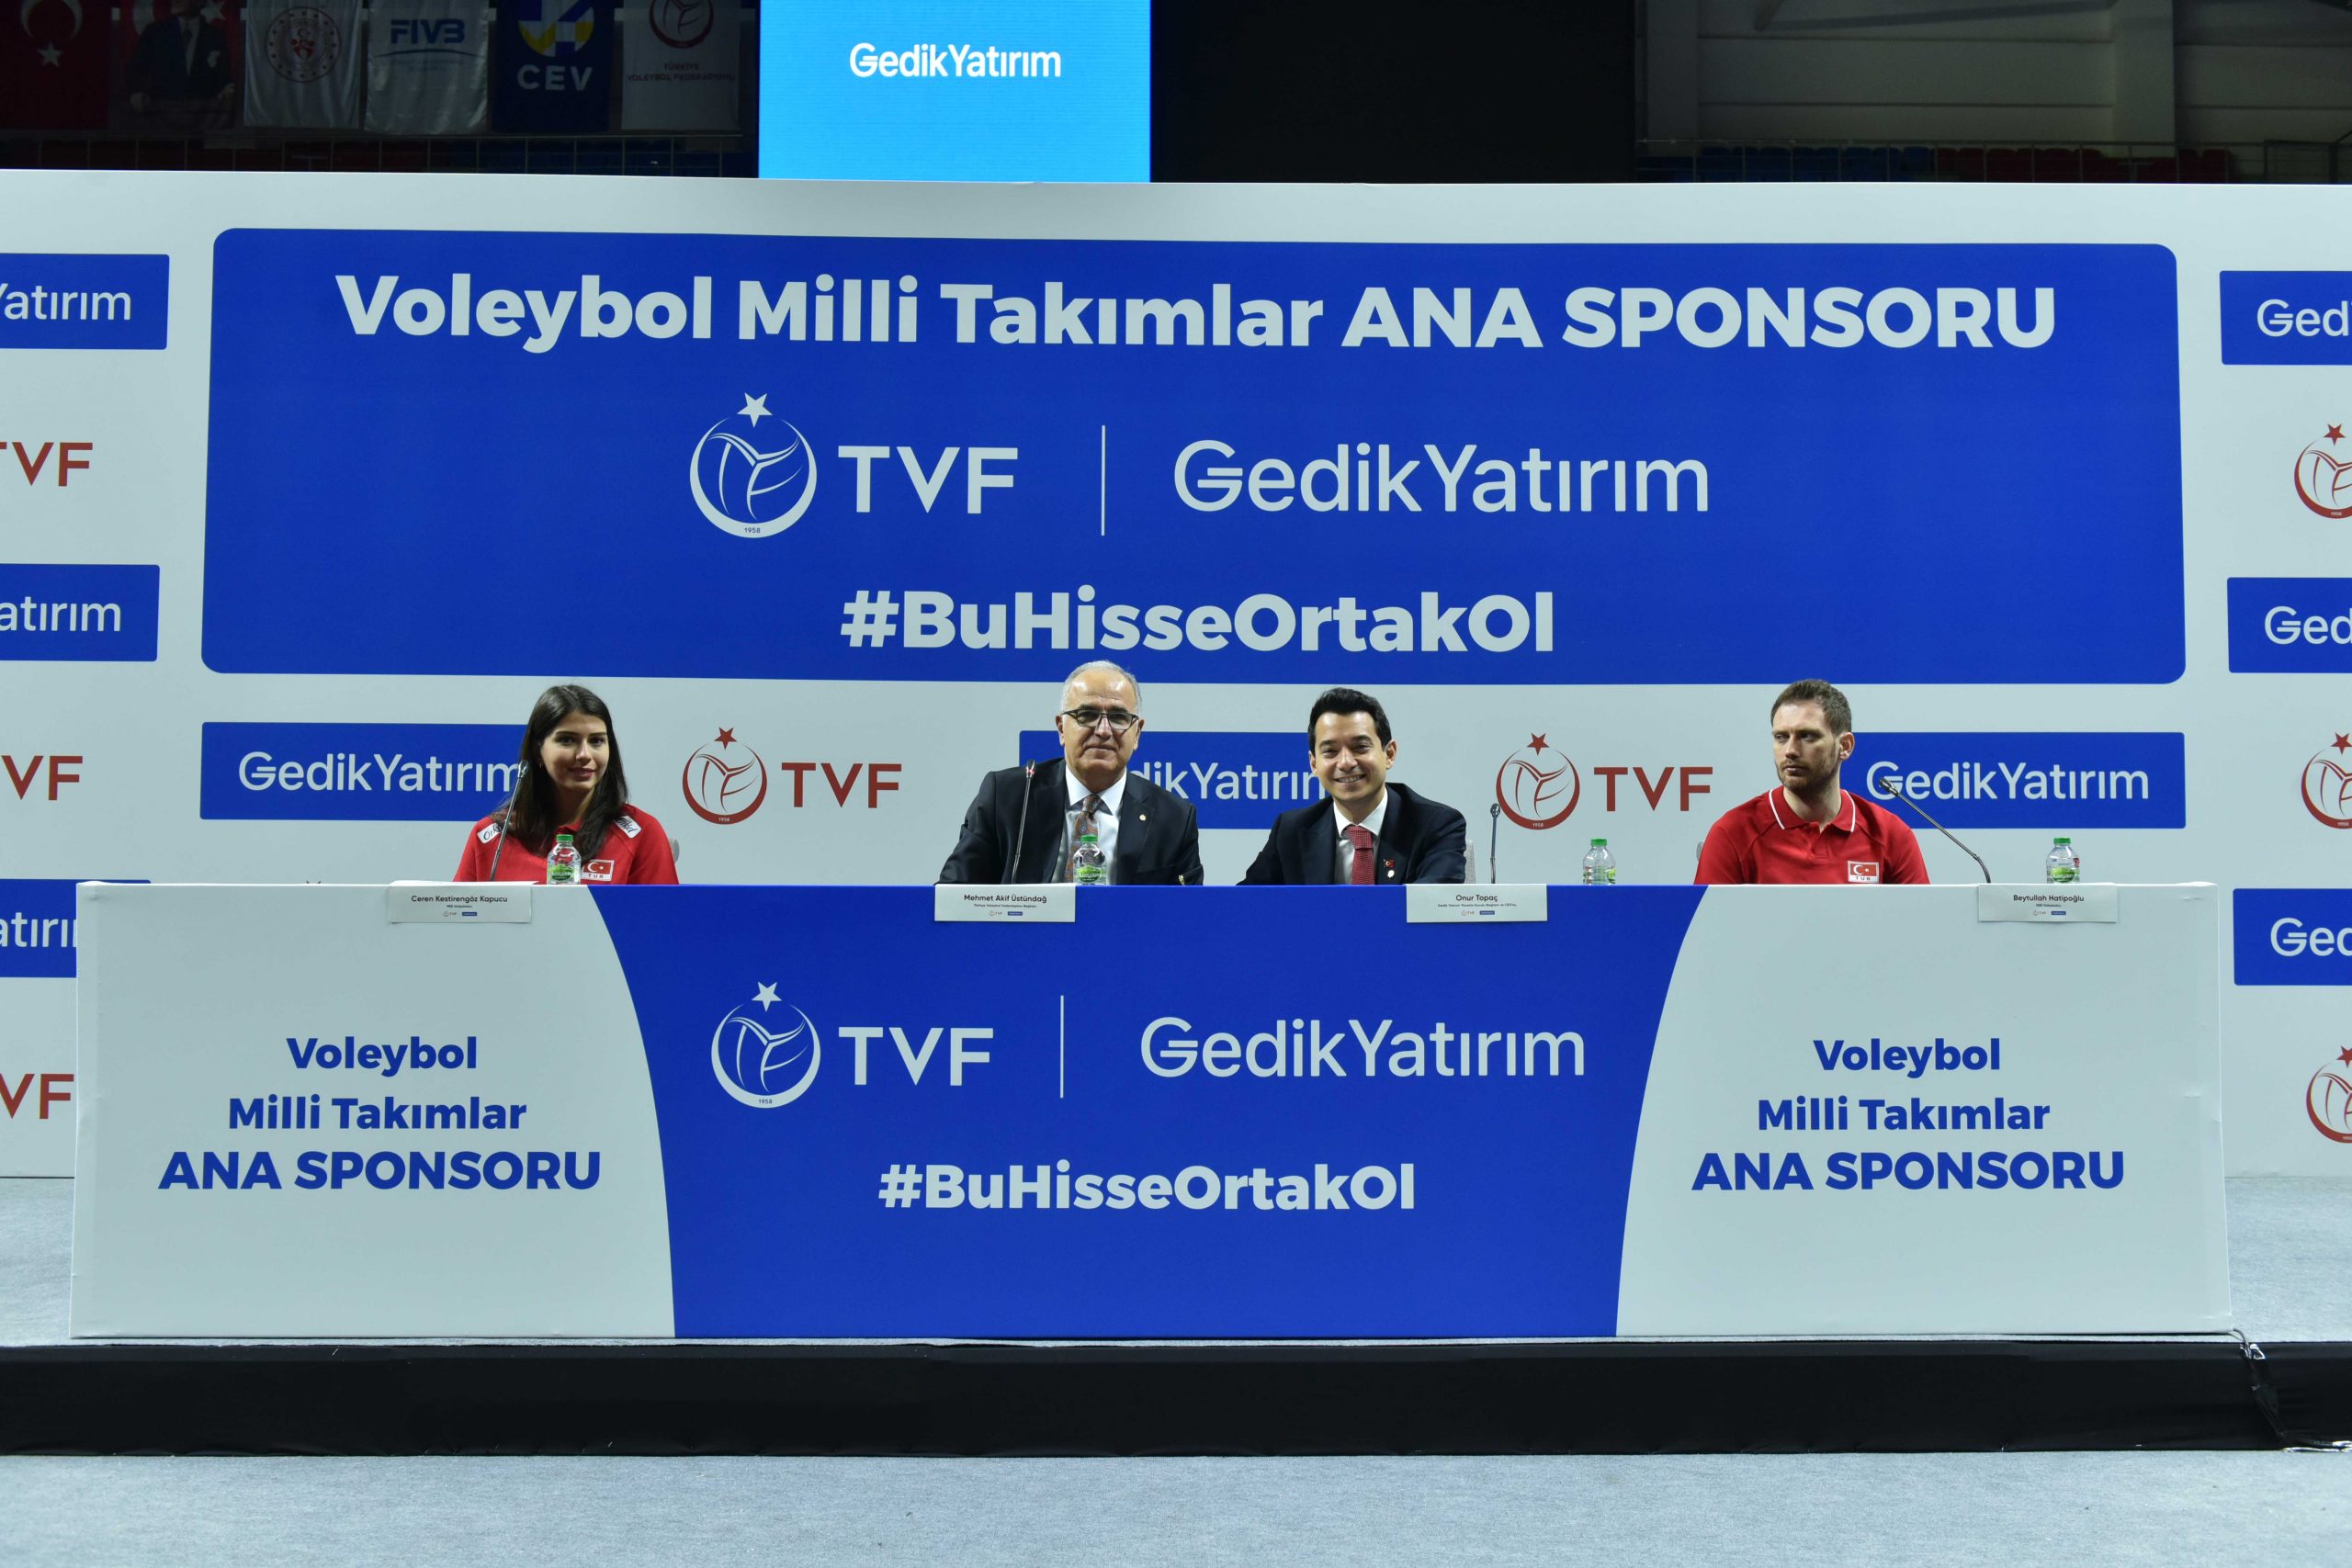 Gedik Yatırım, Voleybol Milli Takımları ana sponsoru oldu